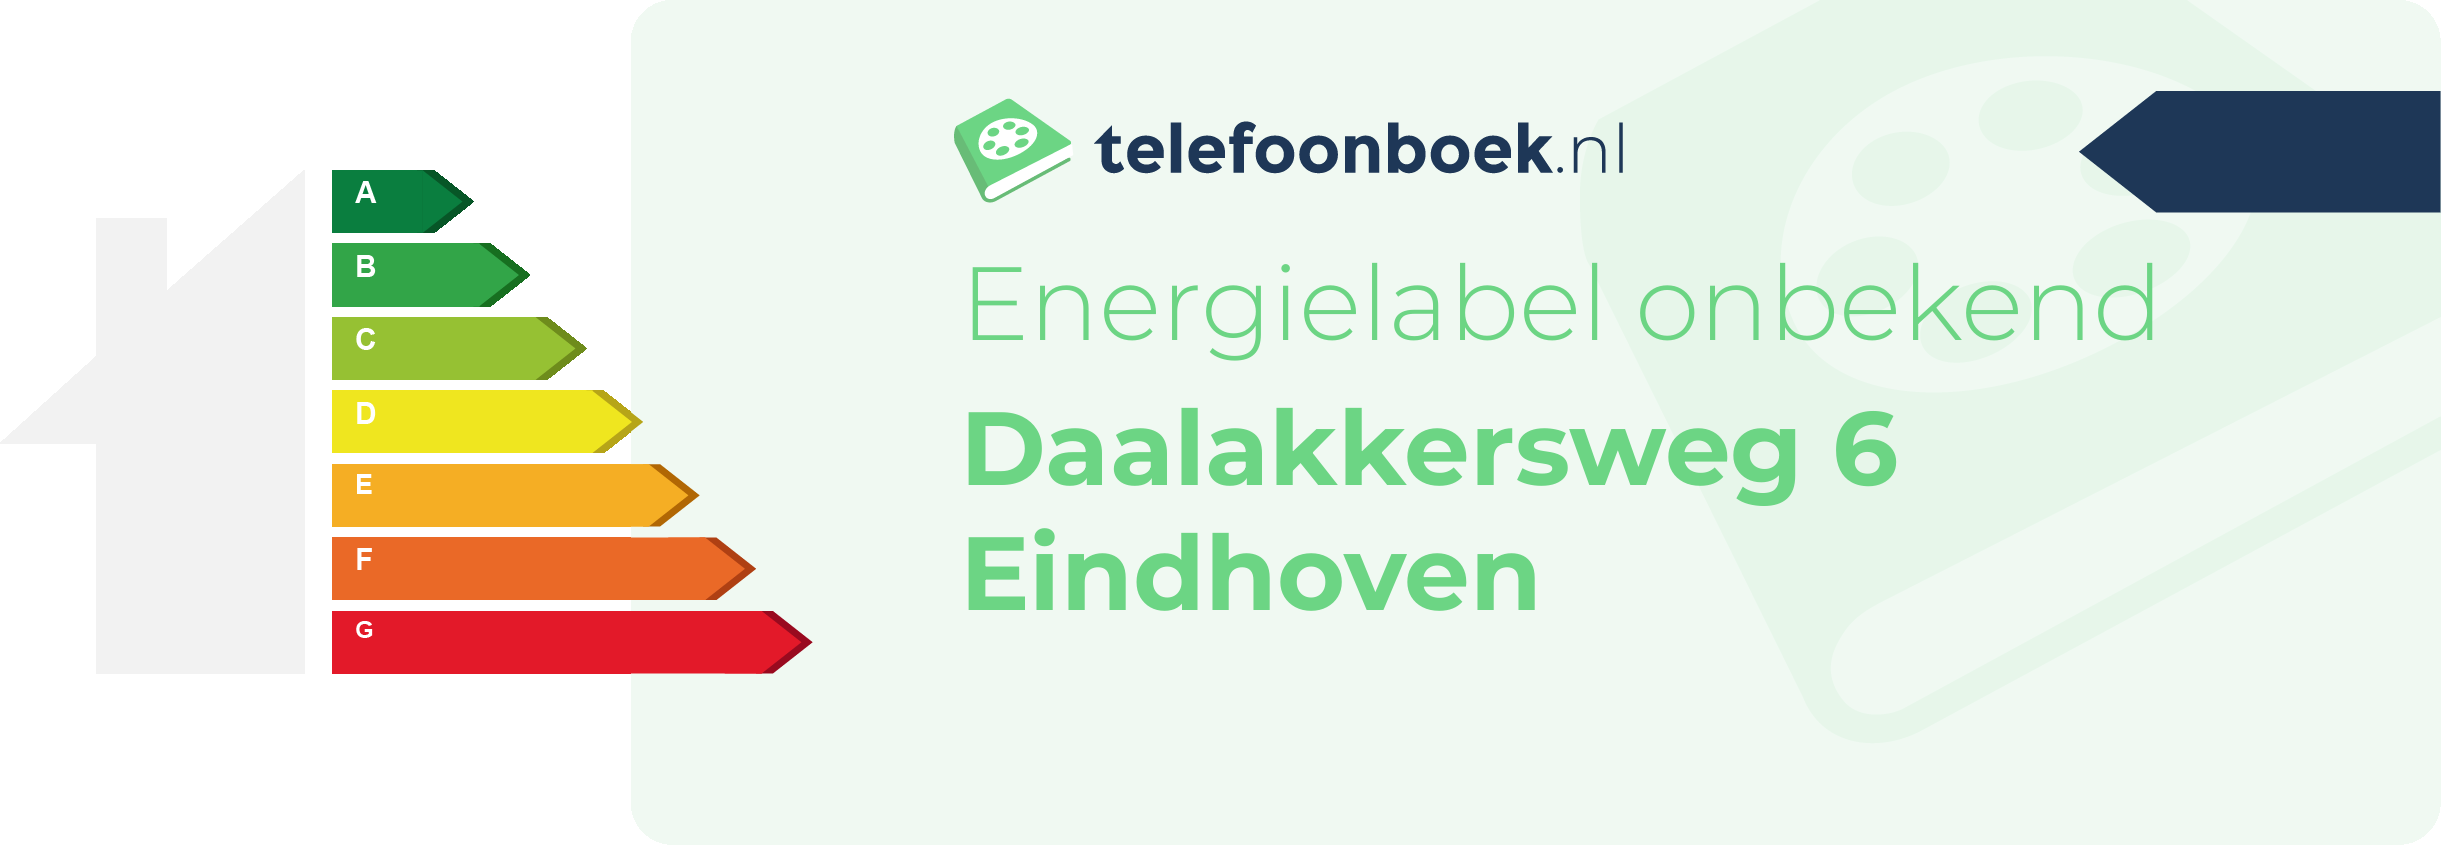 Energielabel Daalakkersweg 6 Eindhoven